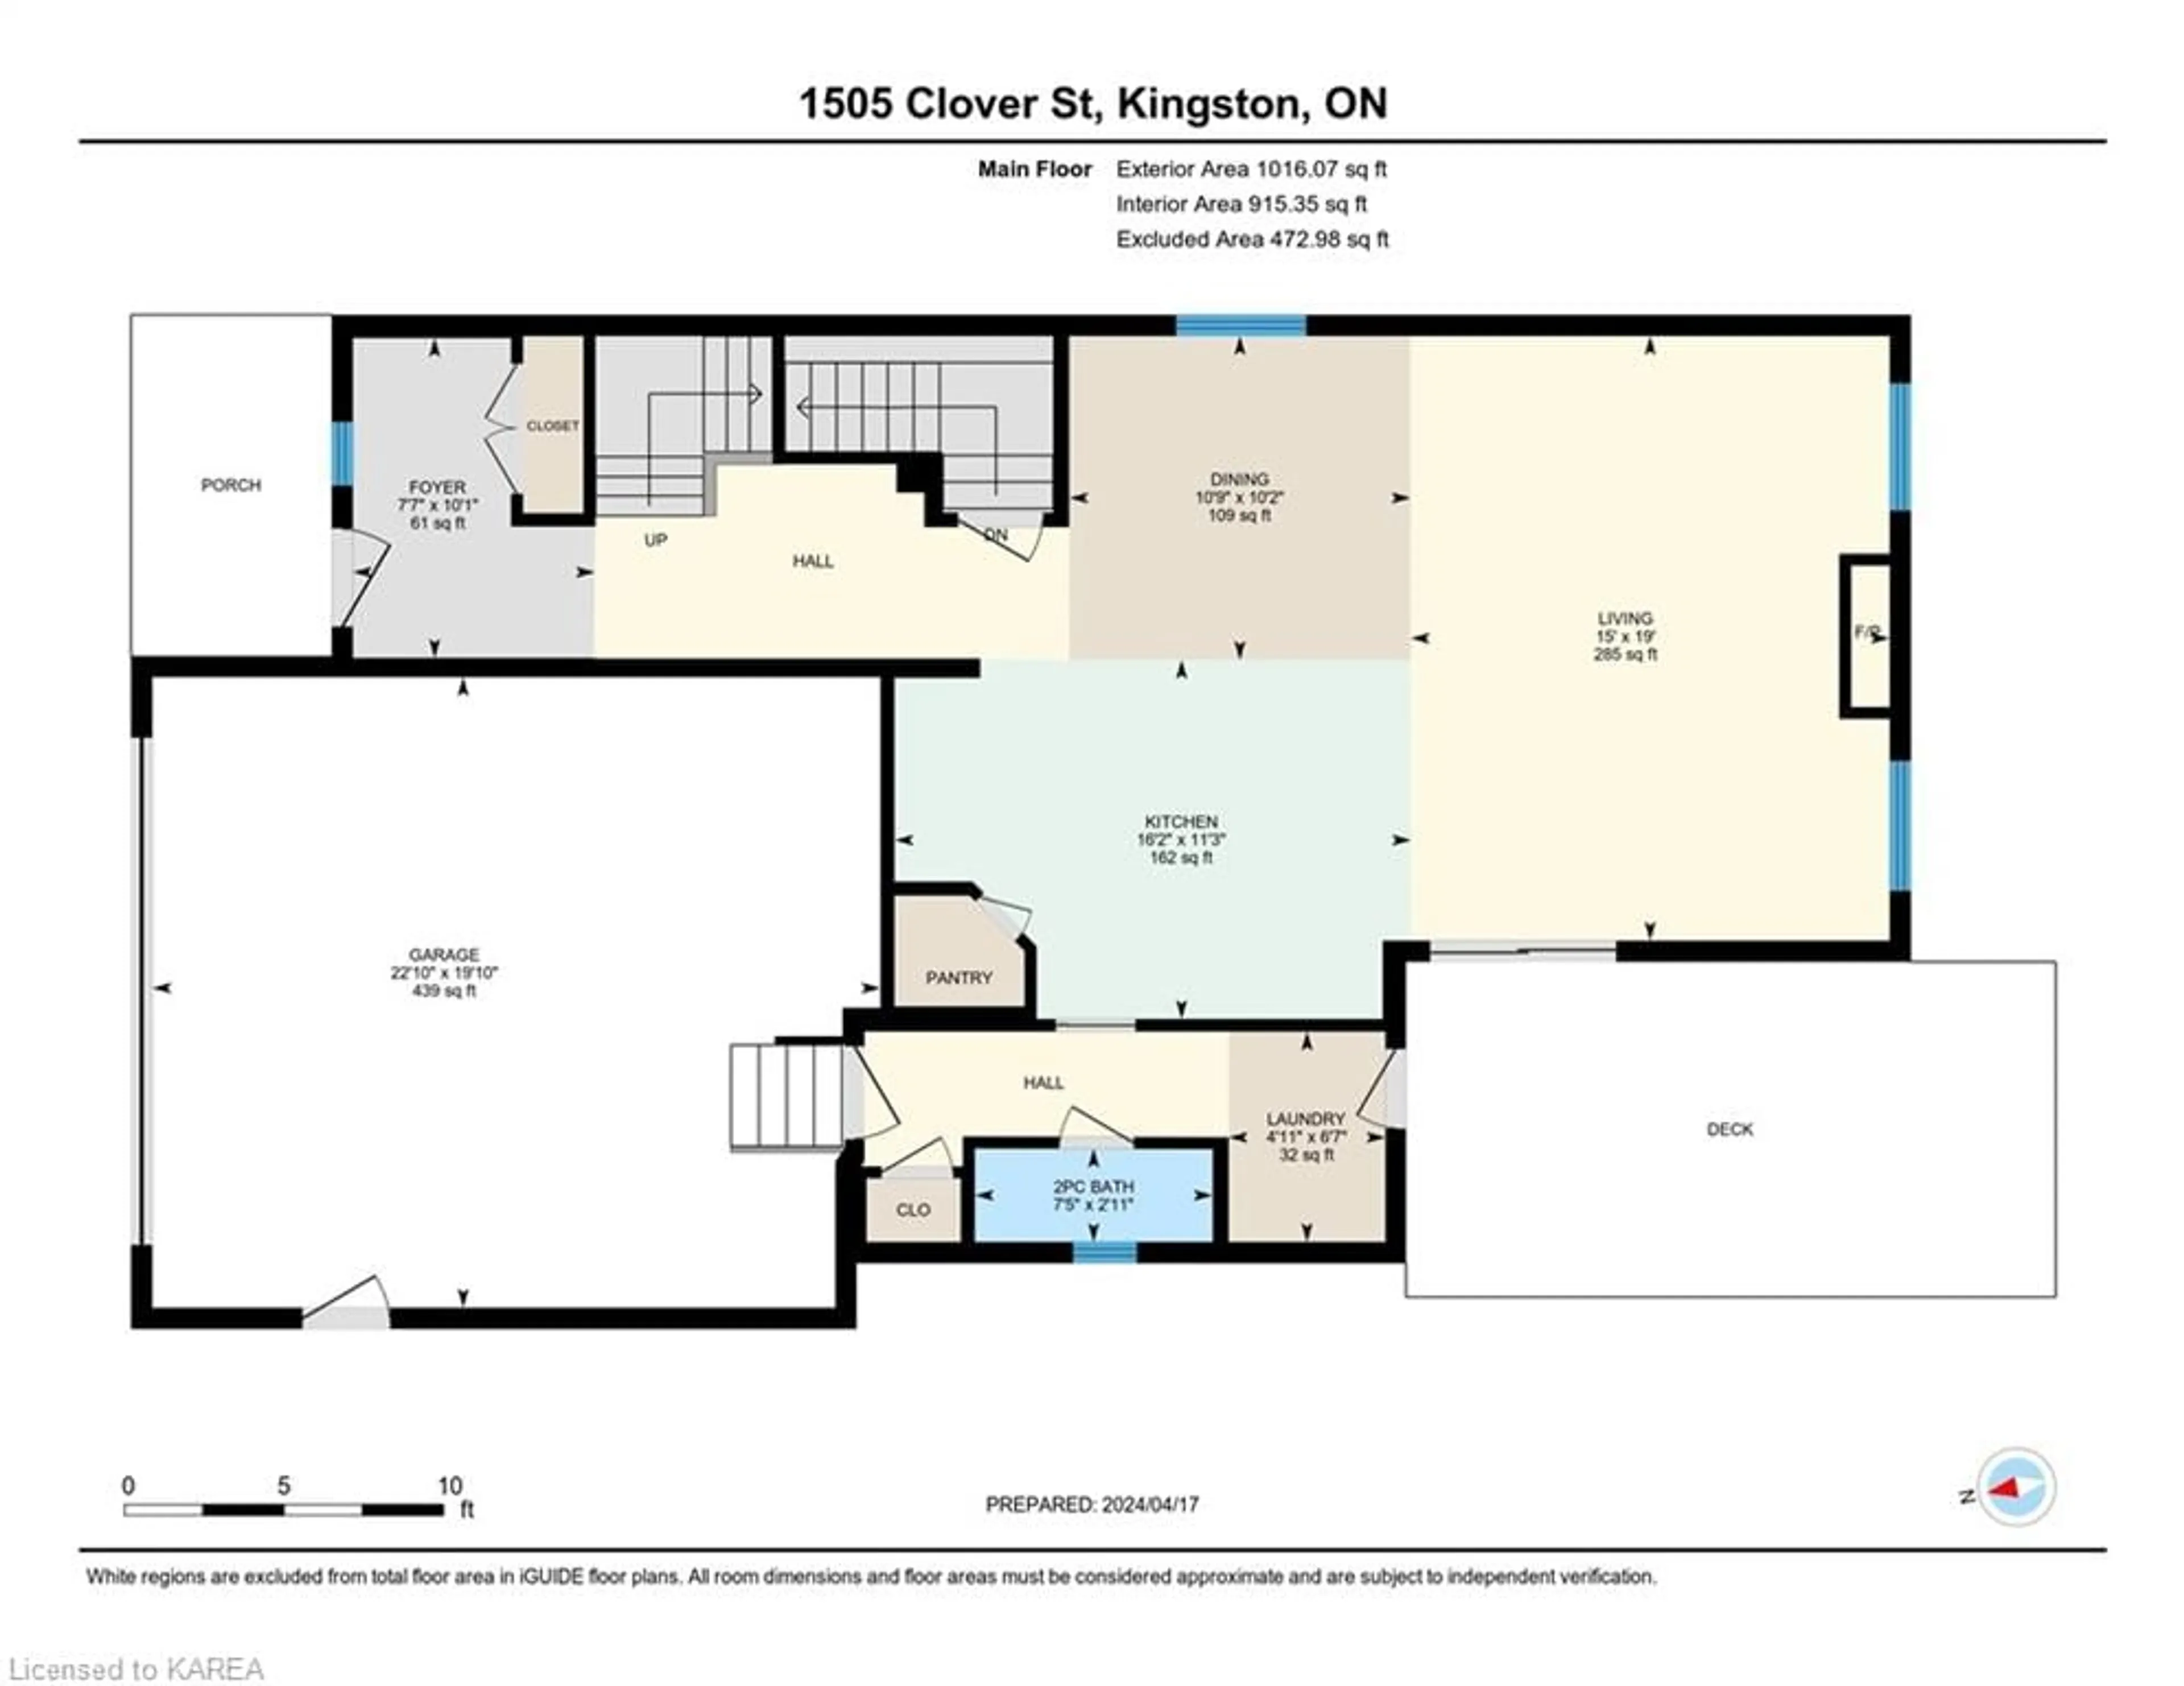 Floor plan for 1505 Clover St, Kingston Ontario K7P 0N1